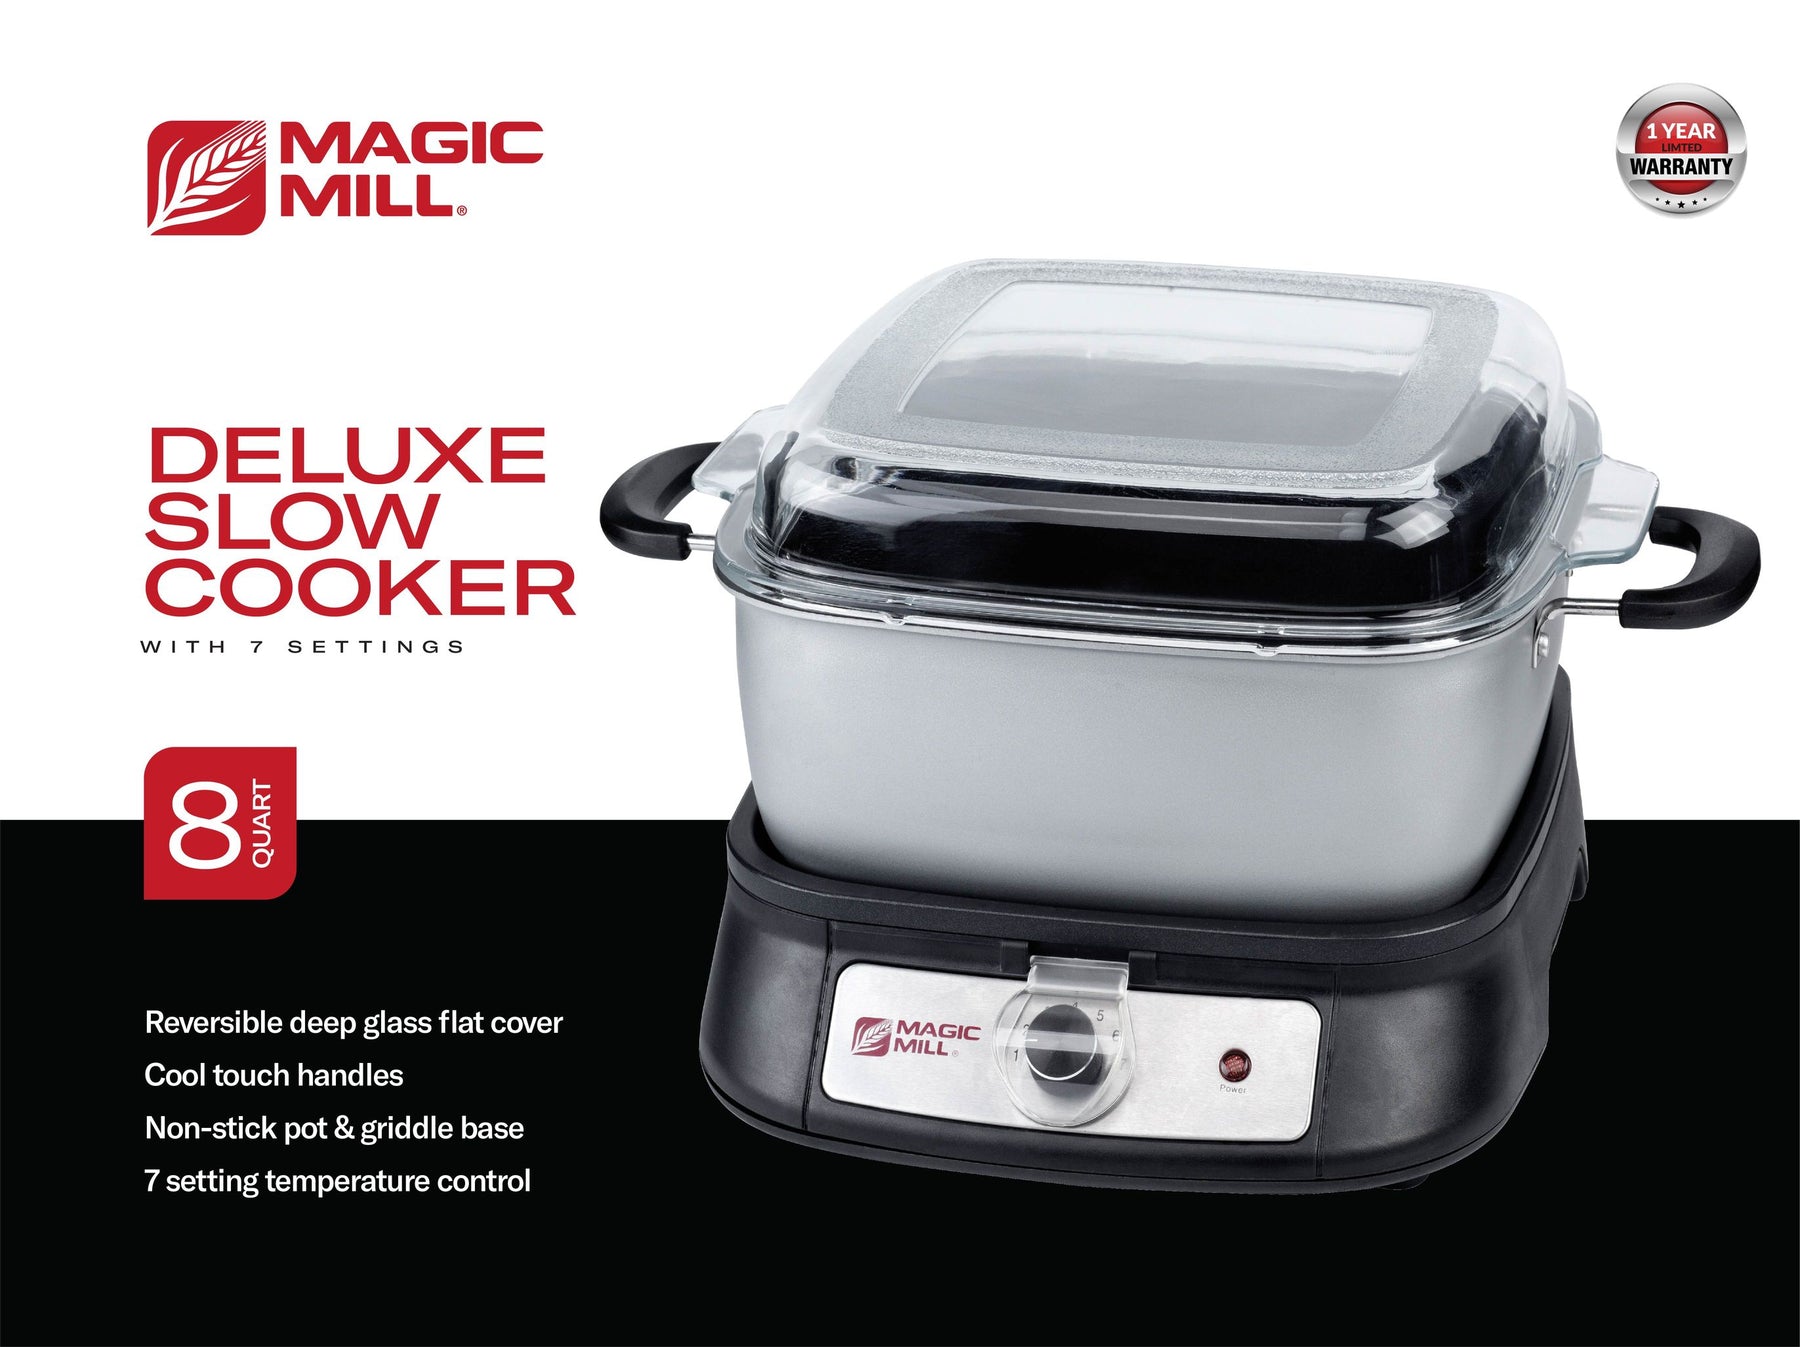 Magic Mill 8.5 Quart Slow Cooker Crock Pot, Digital Programmable